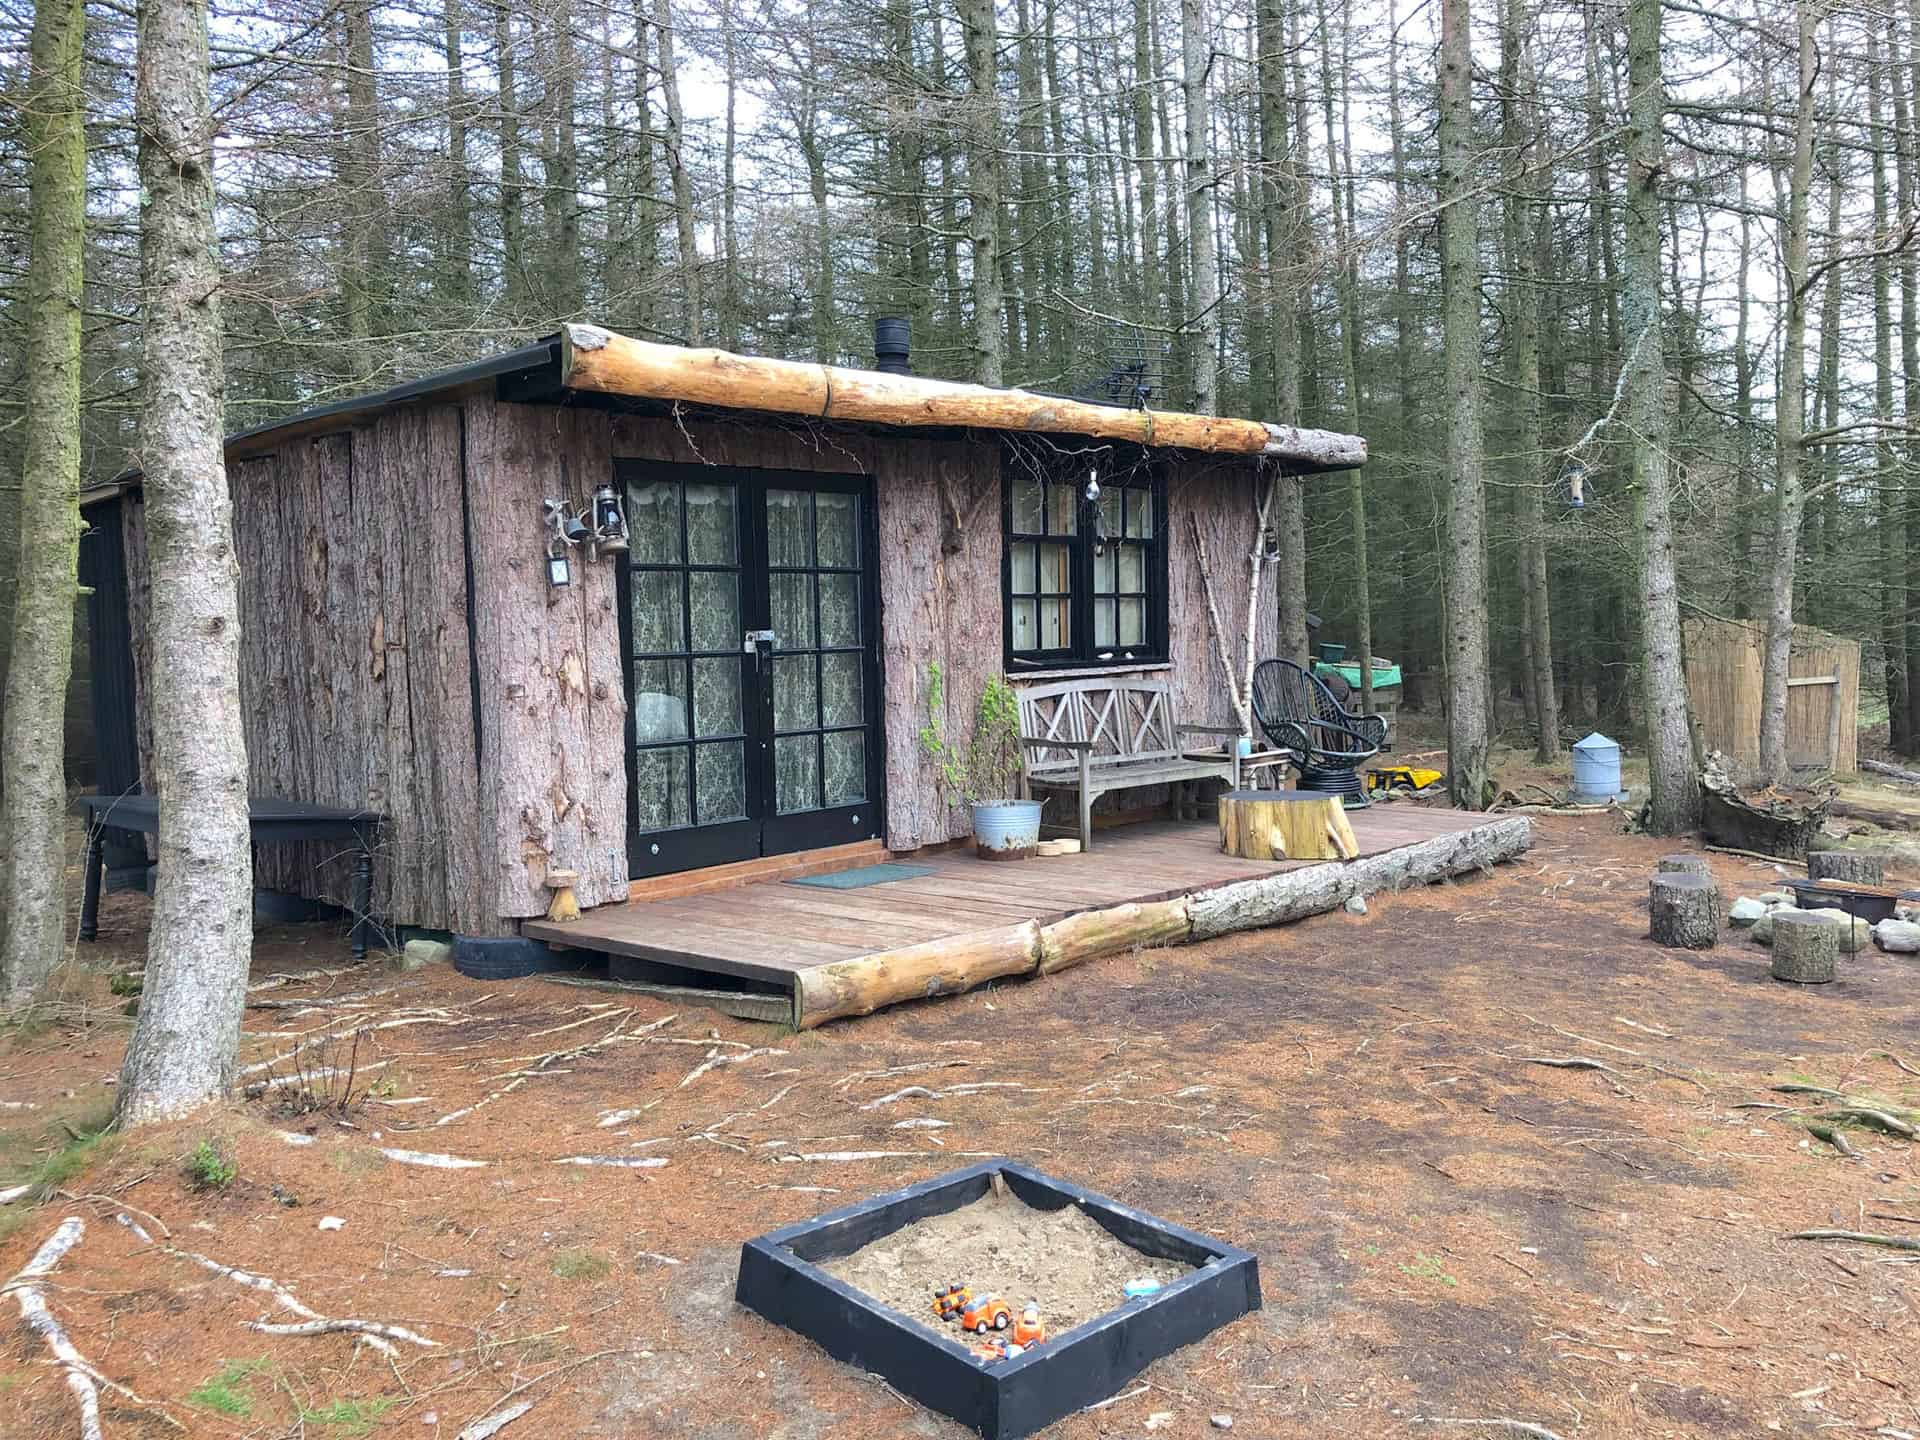 Log cabin in Ellingstring Plantation woodlands.